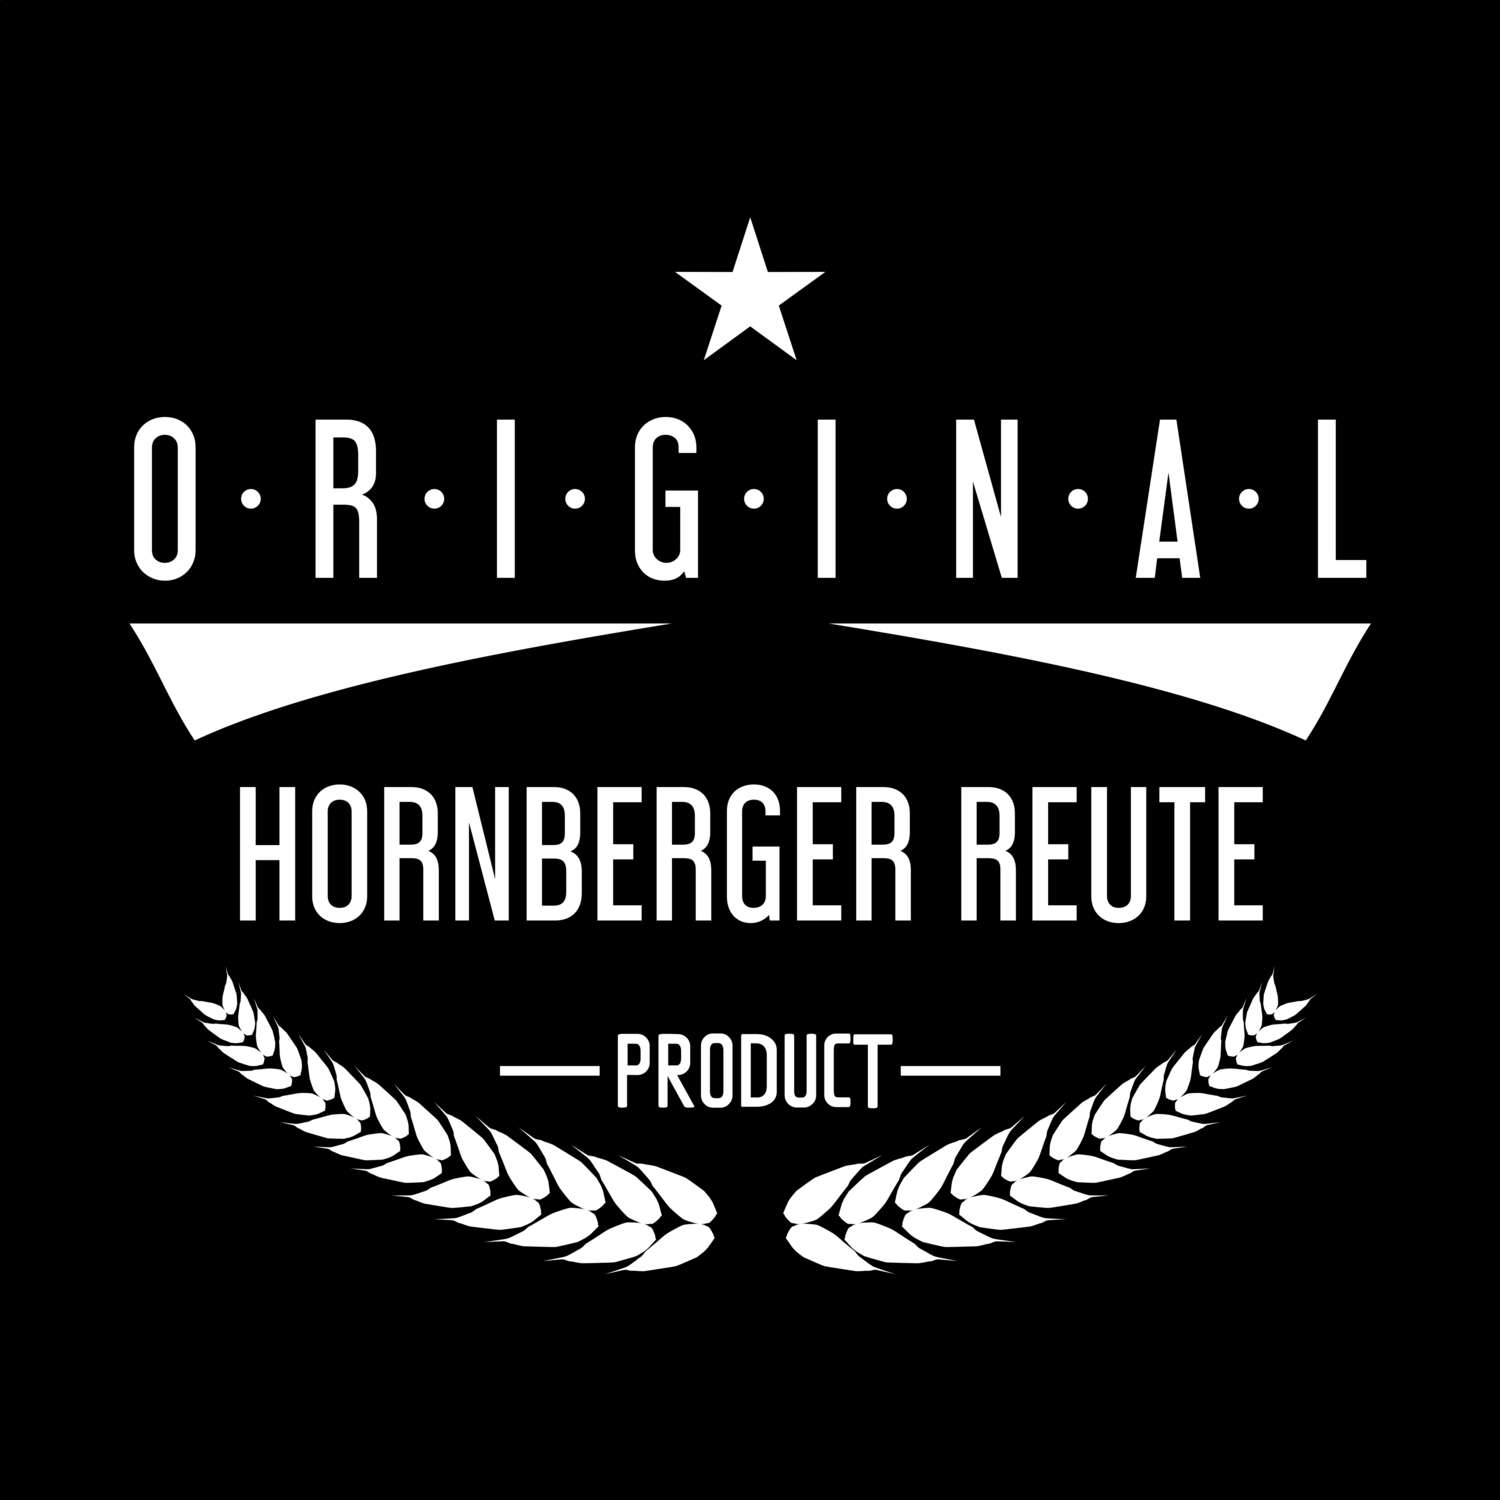 Hornberger Reute T-Shirt »Original Product«